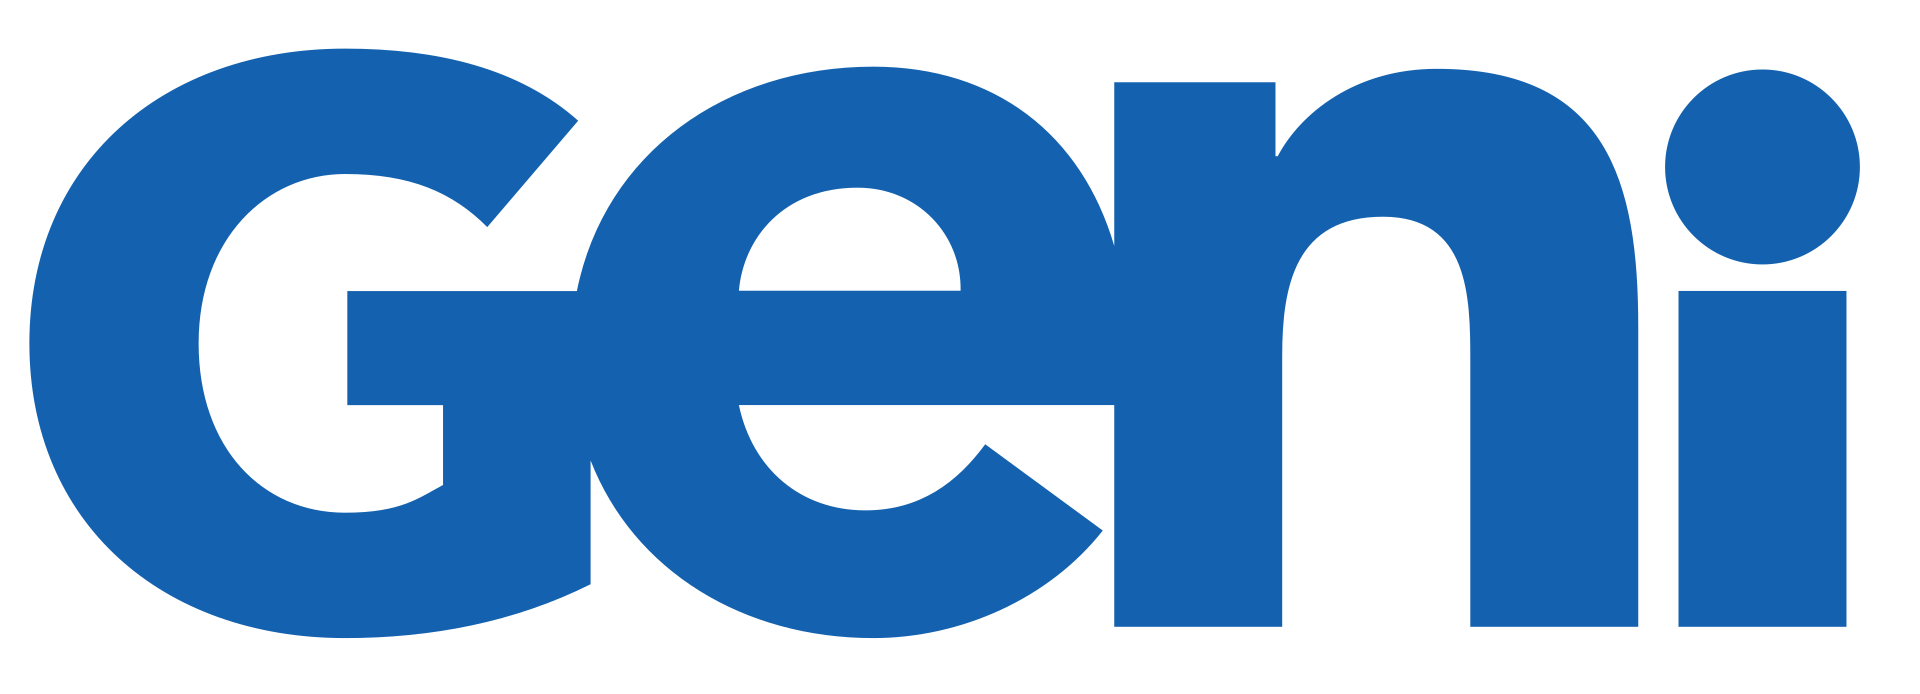 Geni_Logo.svg.png